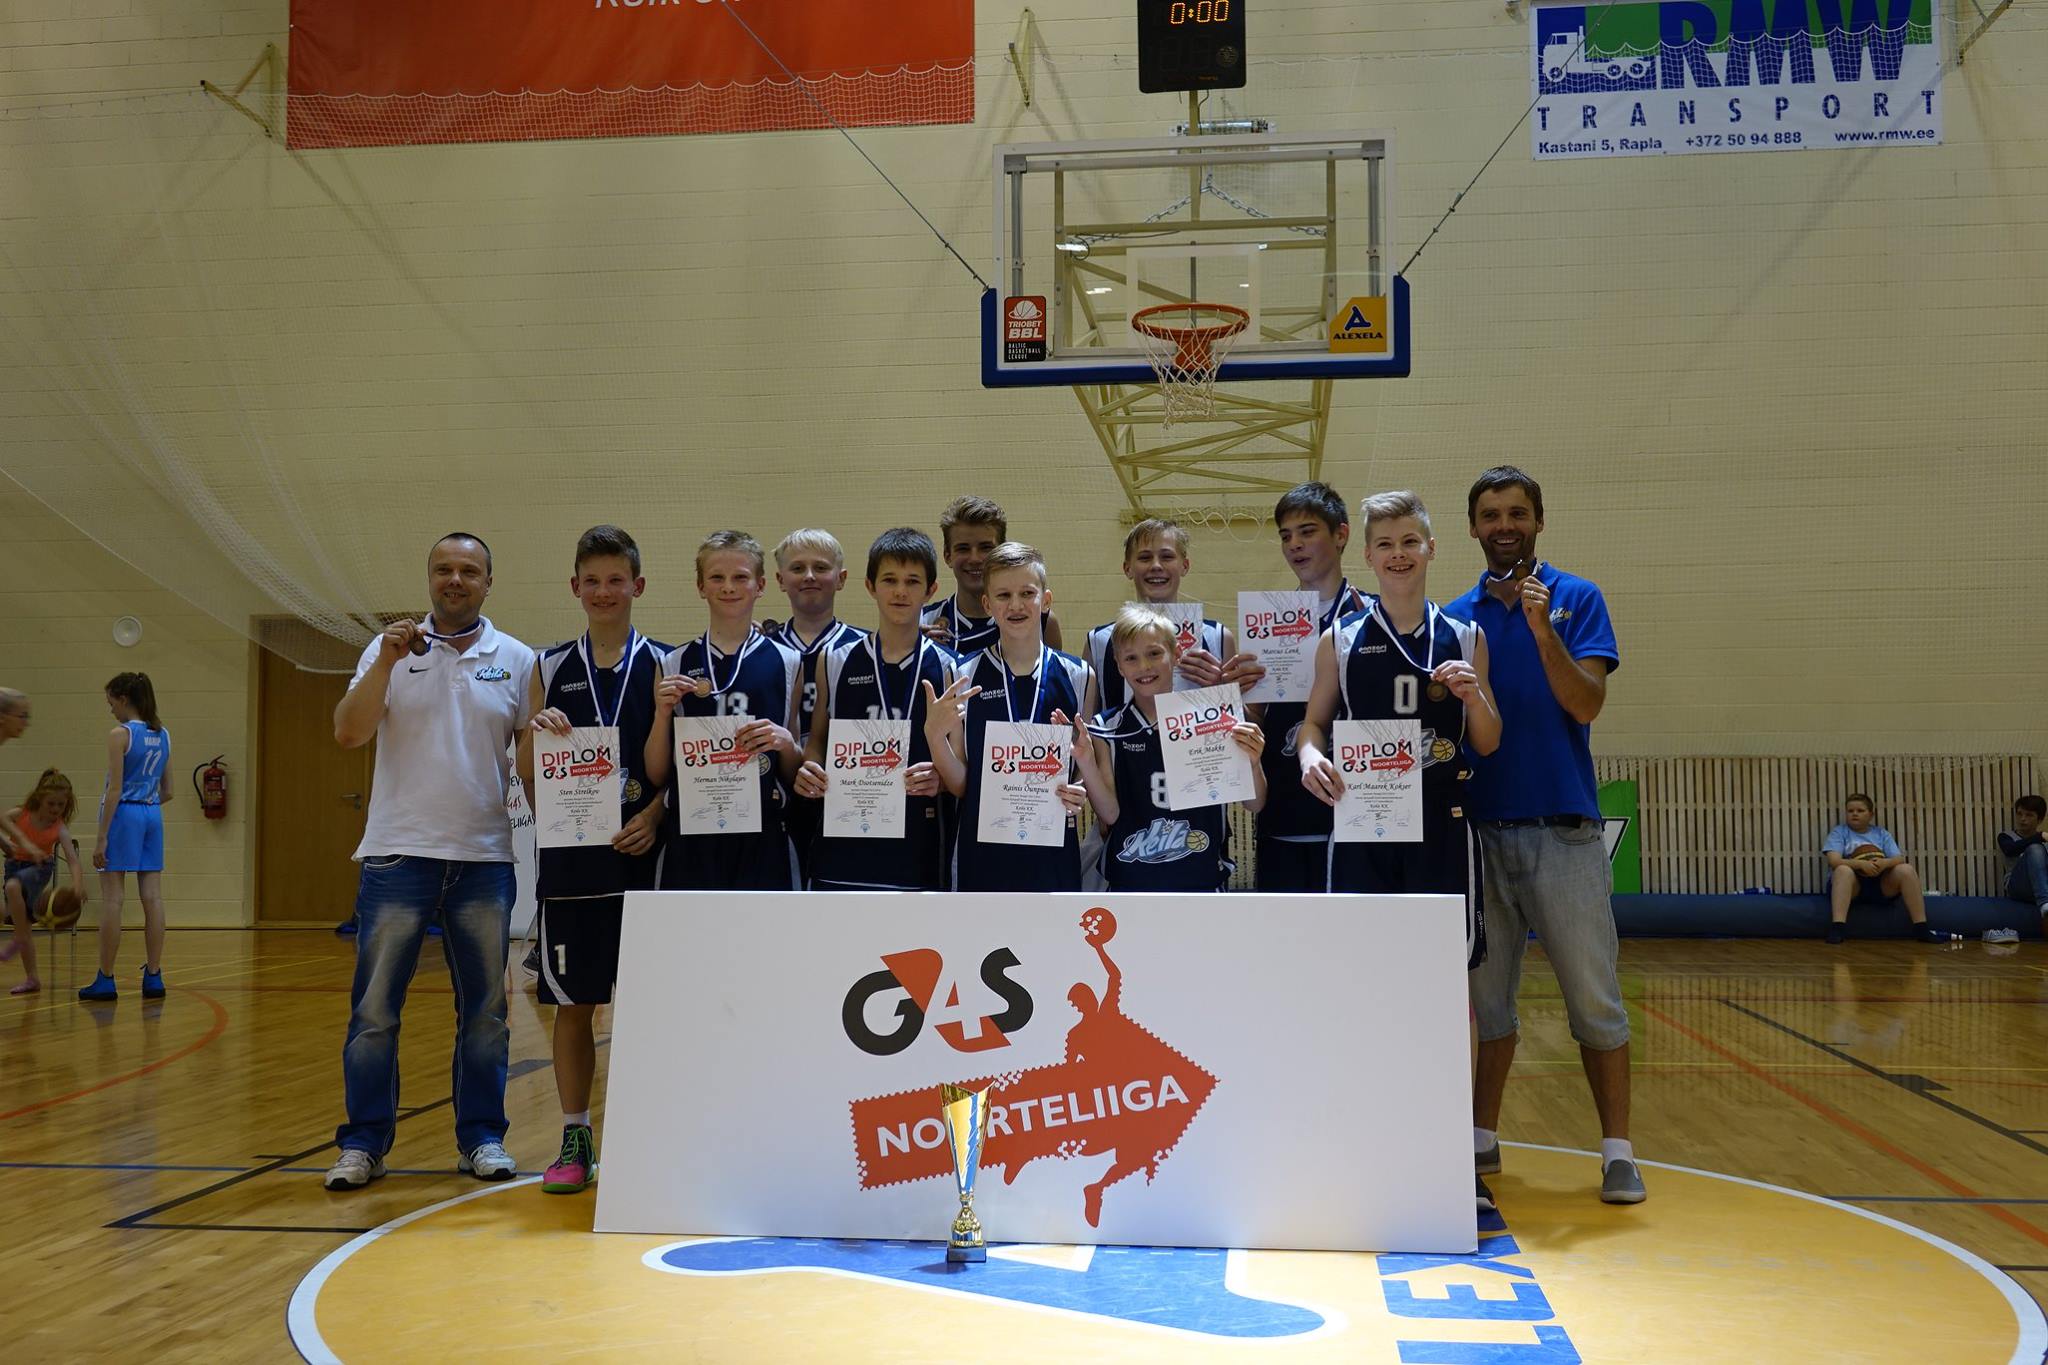 Keila Korvpallikooli U14 vanuseklassi meeskond kordas eelmisel aastal saavutatut ning võitis taaskord Eesti meistrivõistlustel pronksmedalid!